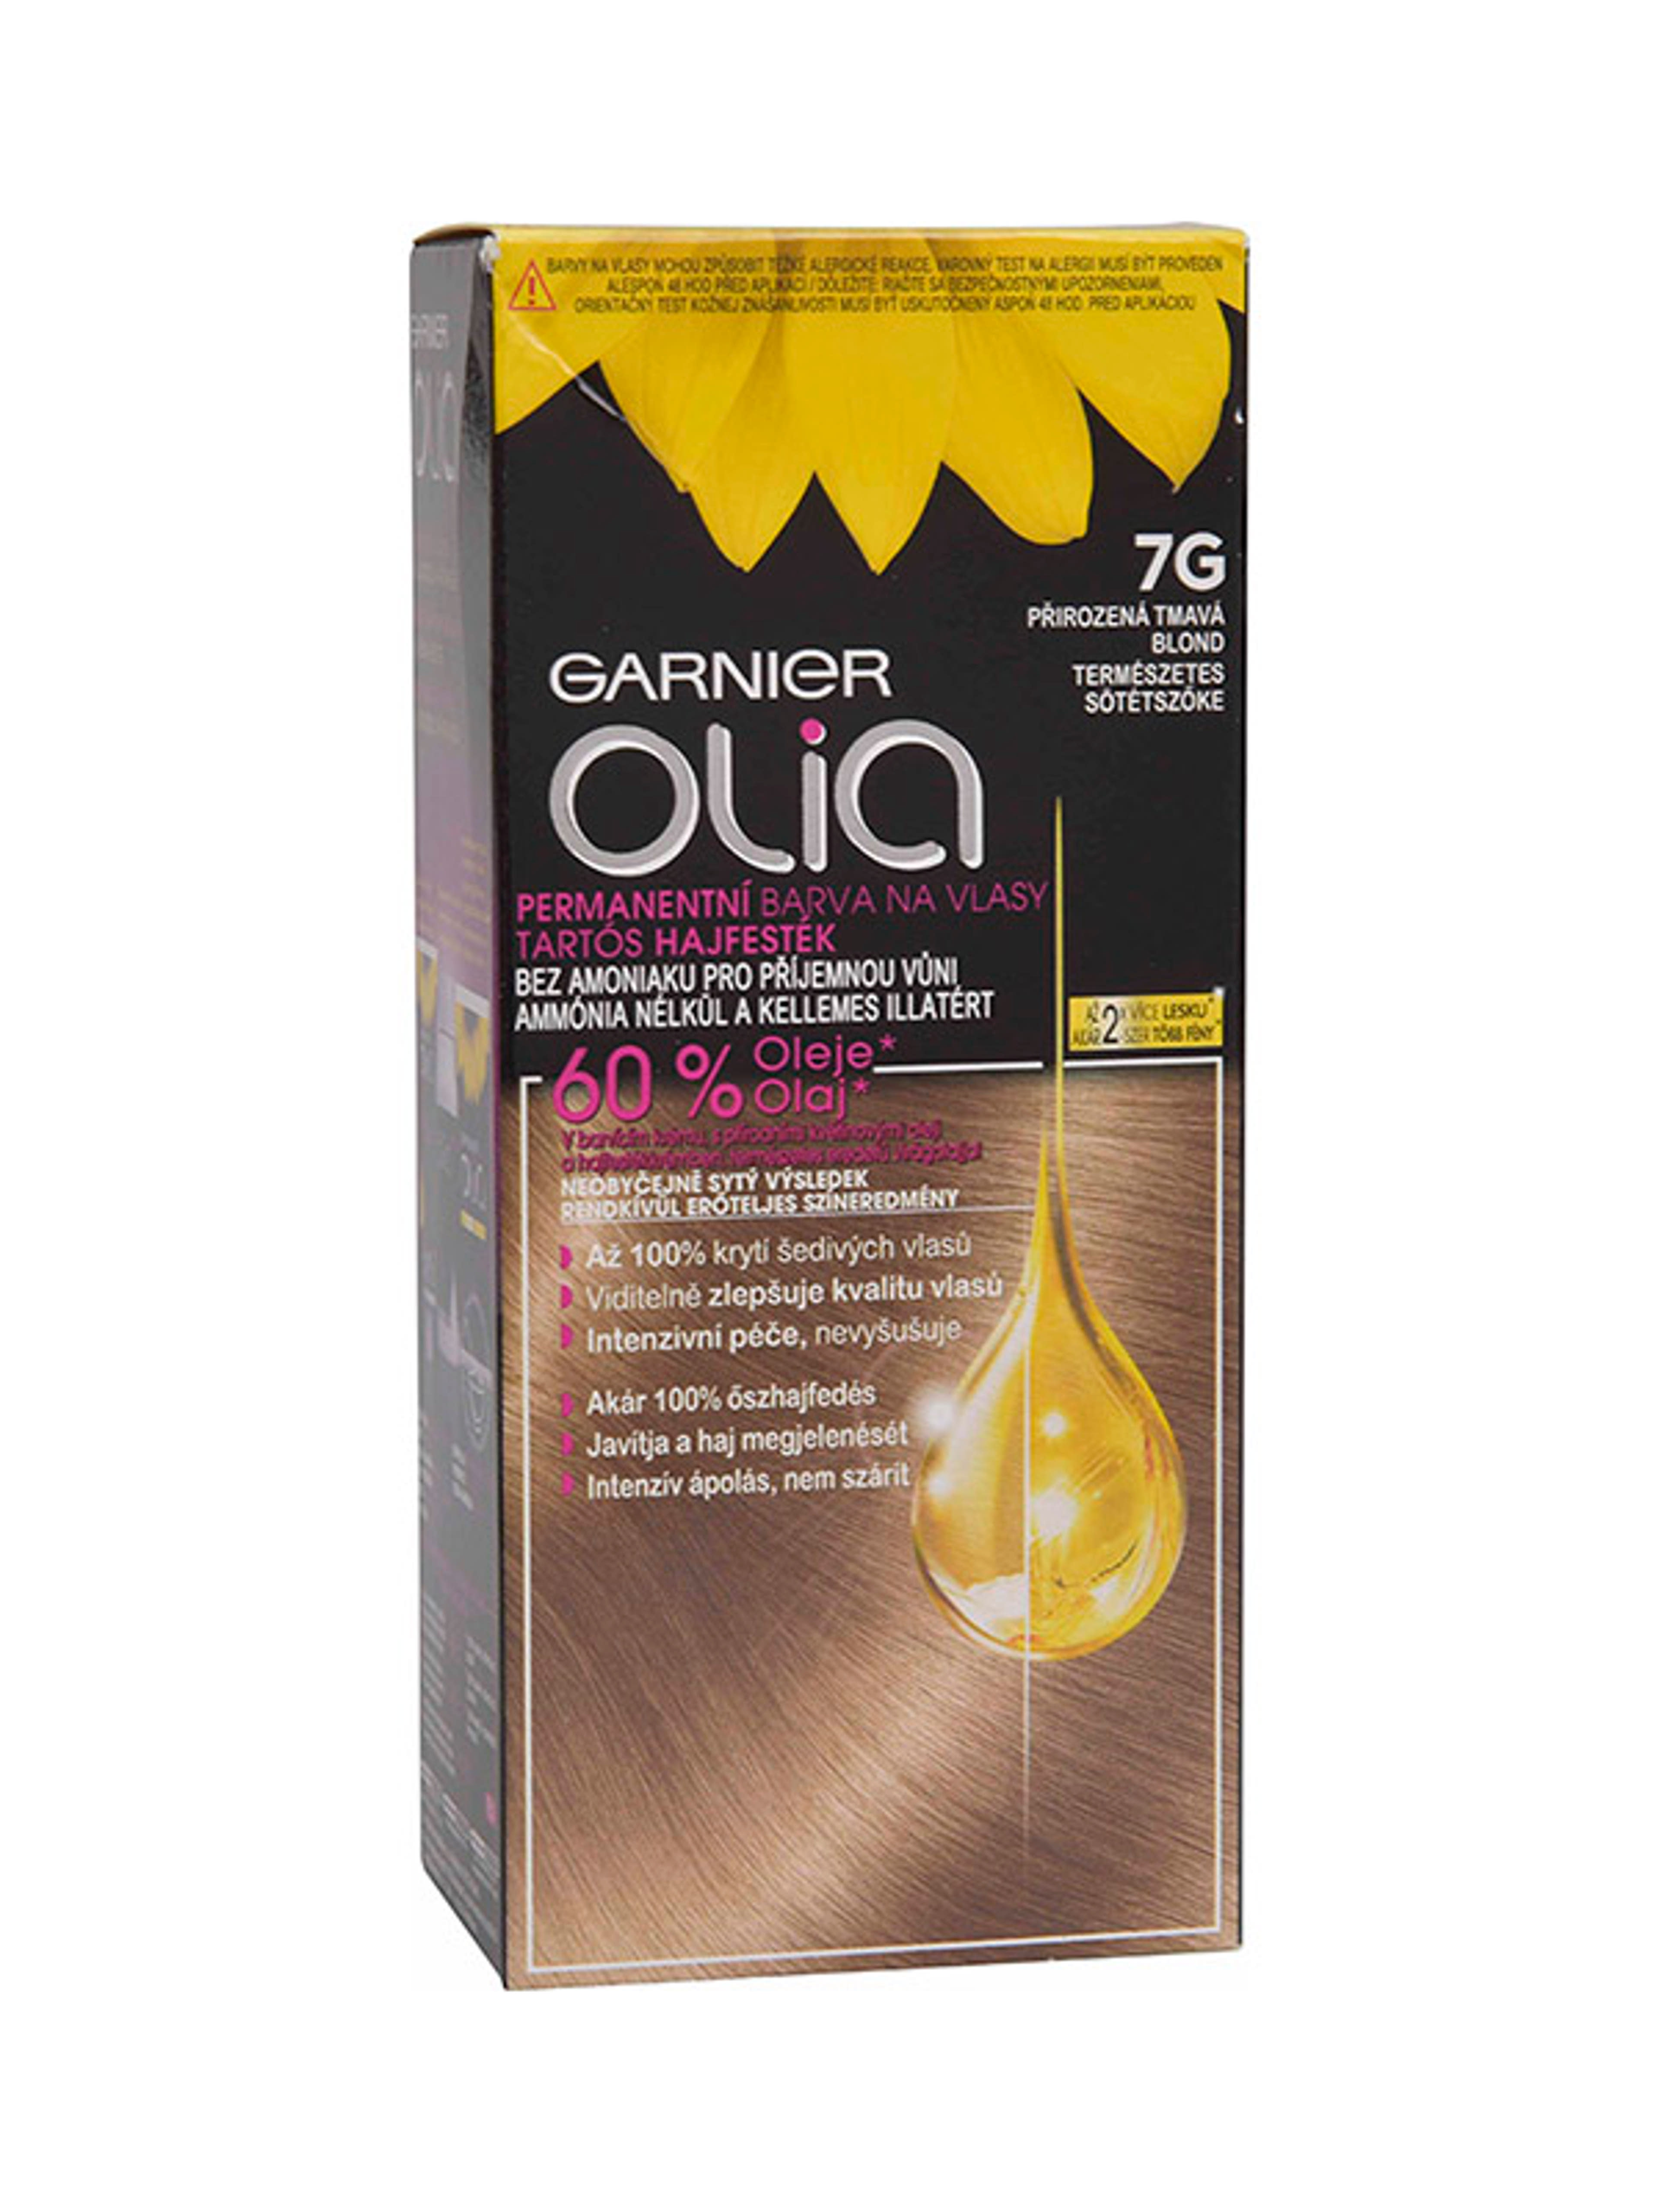 Garnier Olia tartós hajfesték 7G Természetes sötétszőke - 1 db